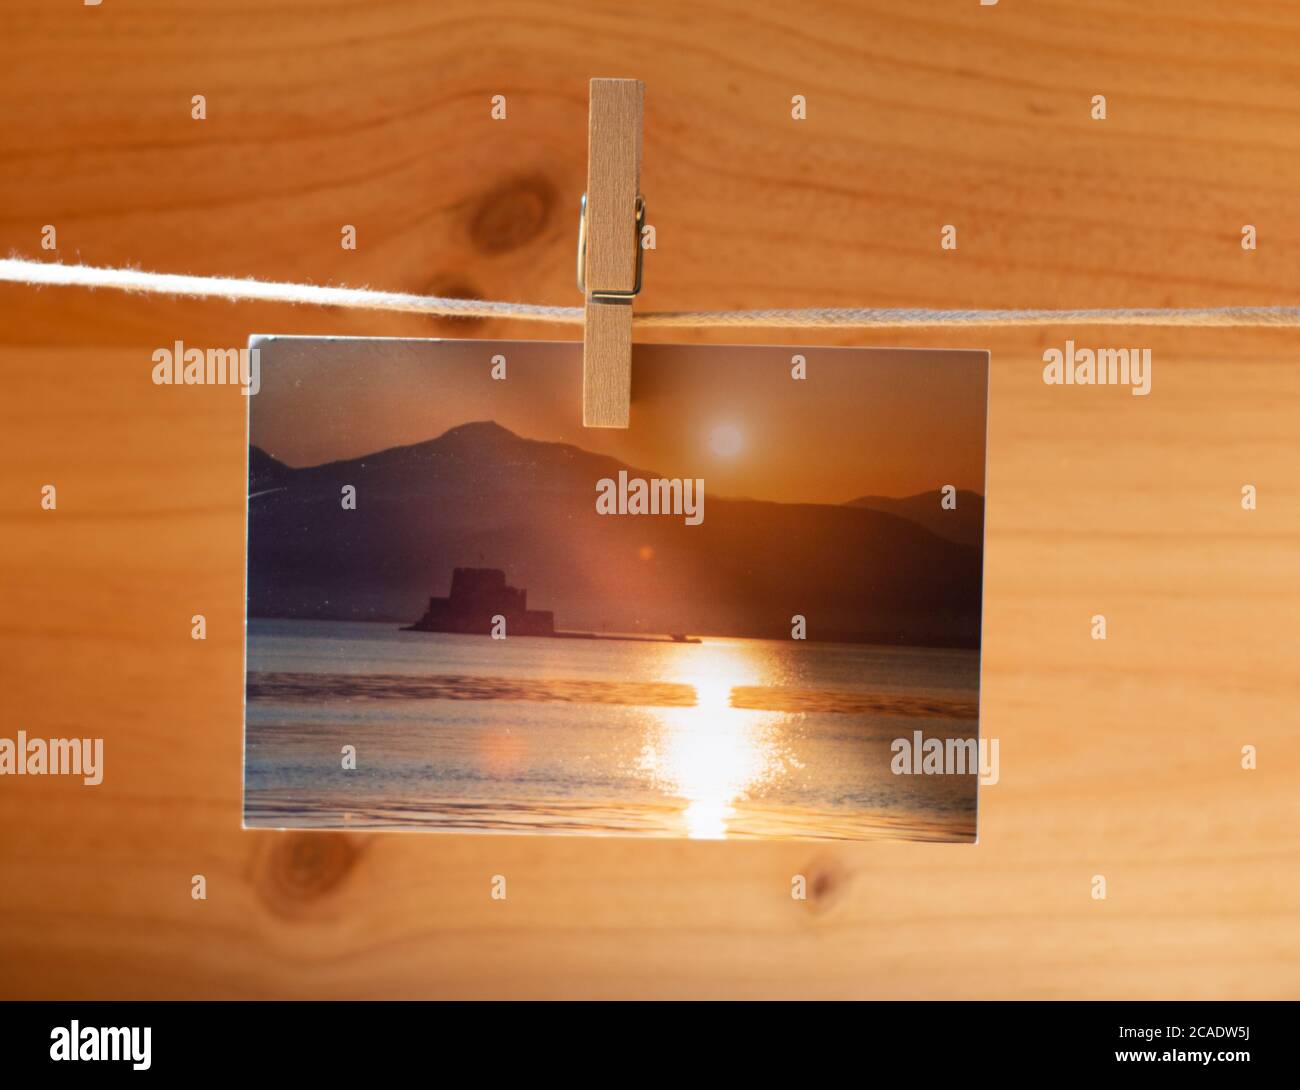 Belles photos accrochées avec des épingles à linge sur fond en bois Banque D'Images